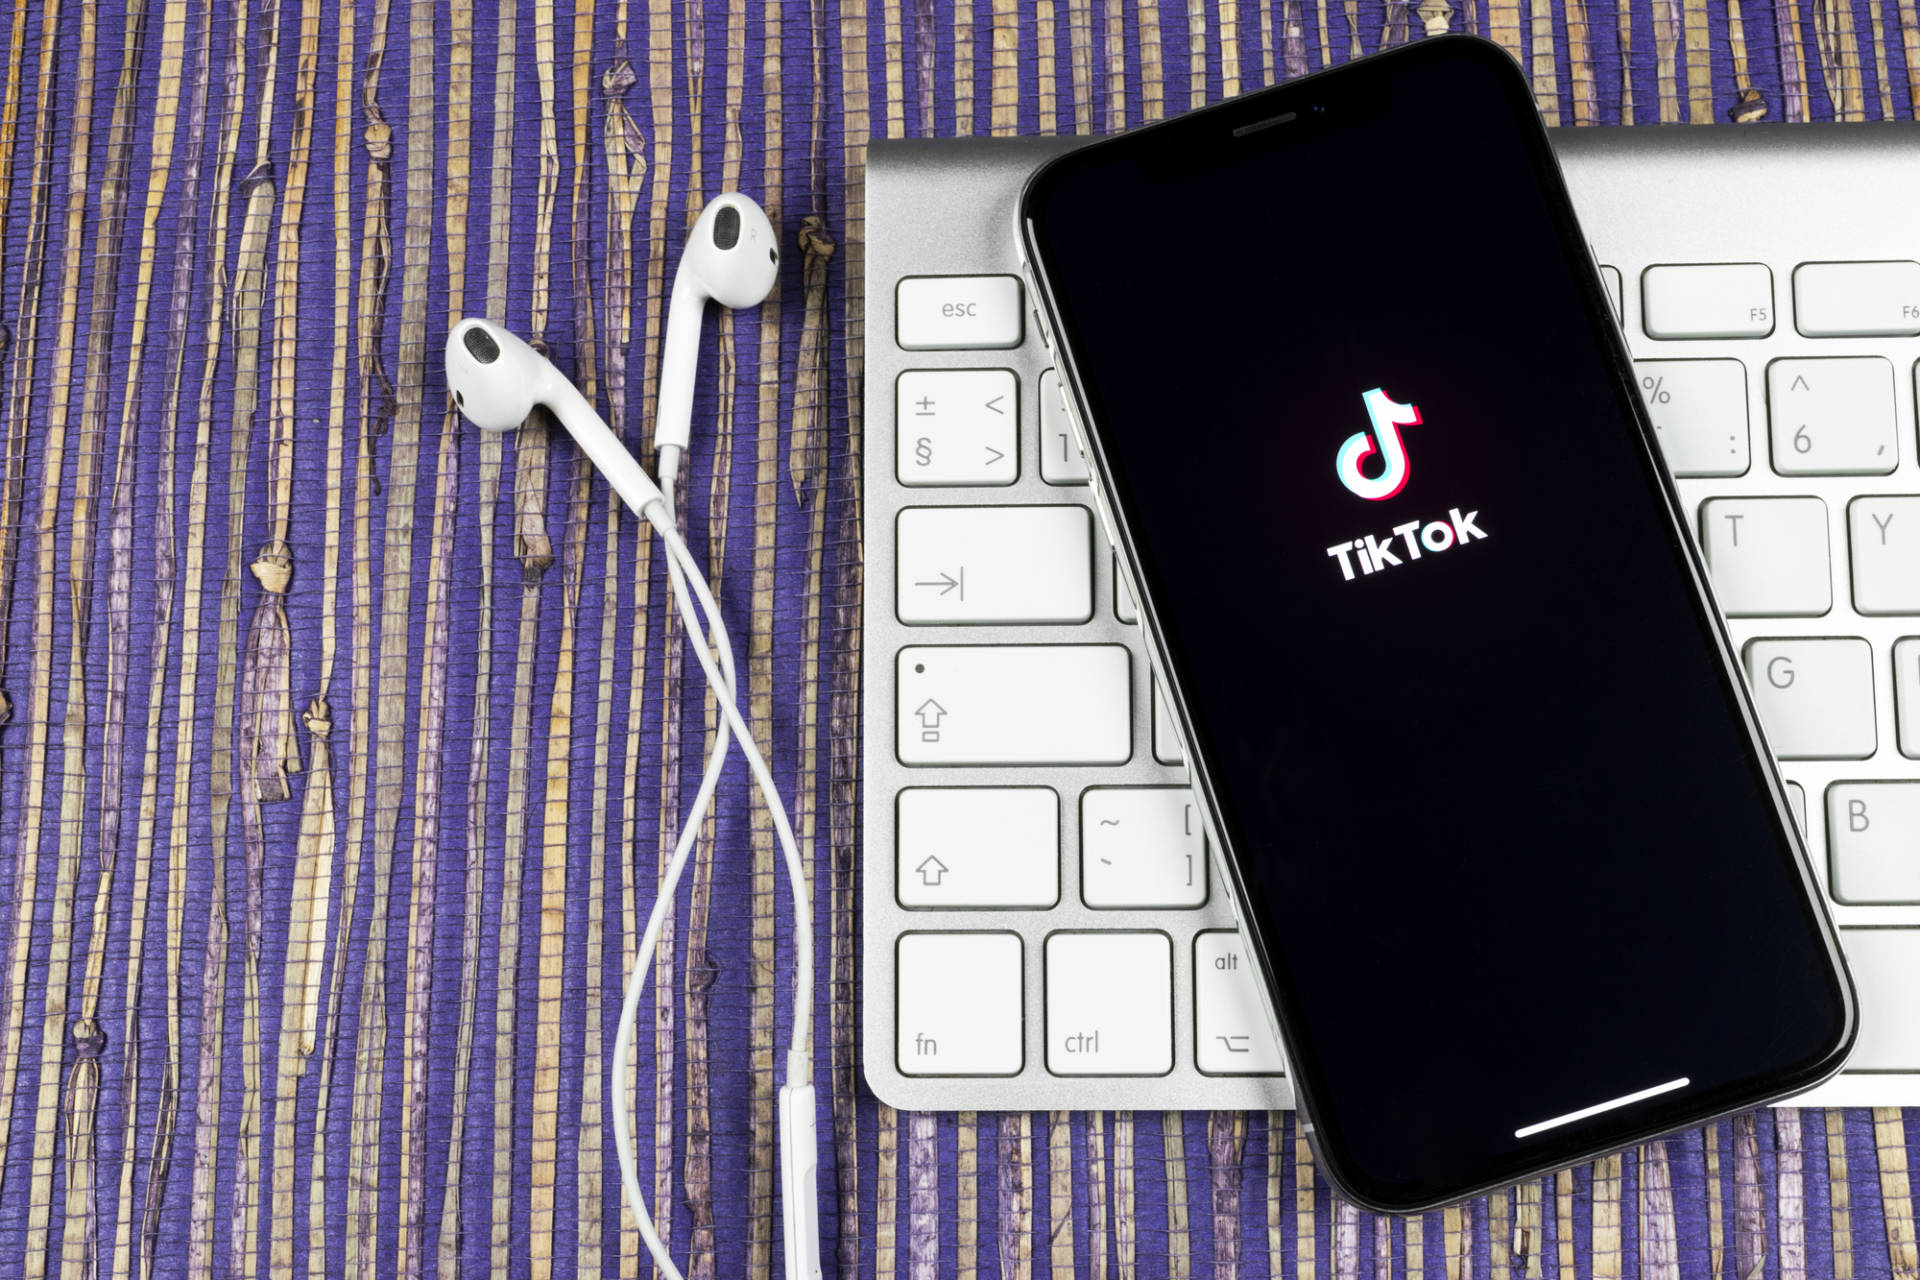 La società di Tik Tok produrrà uno smartphone dedicato ai giovanissimi